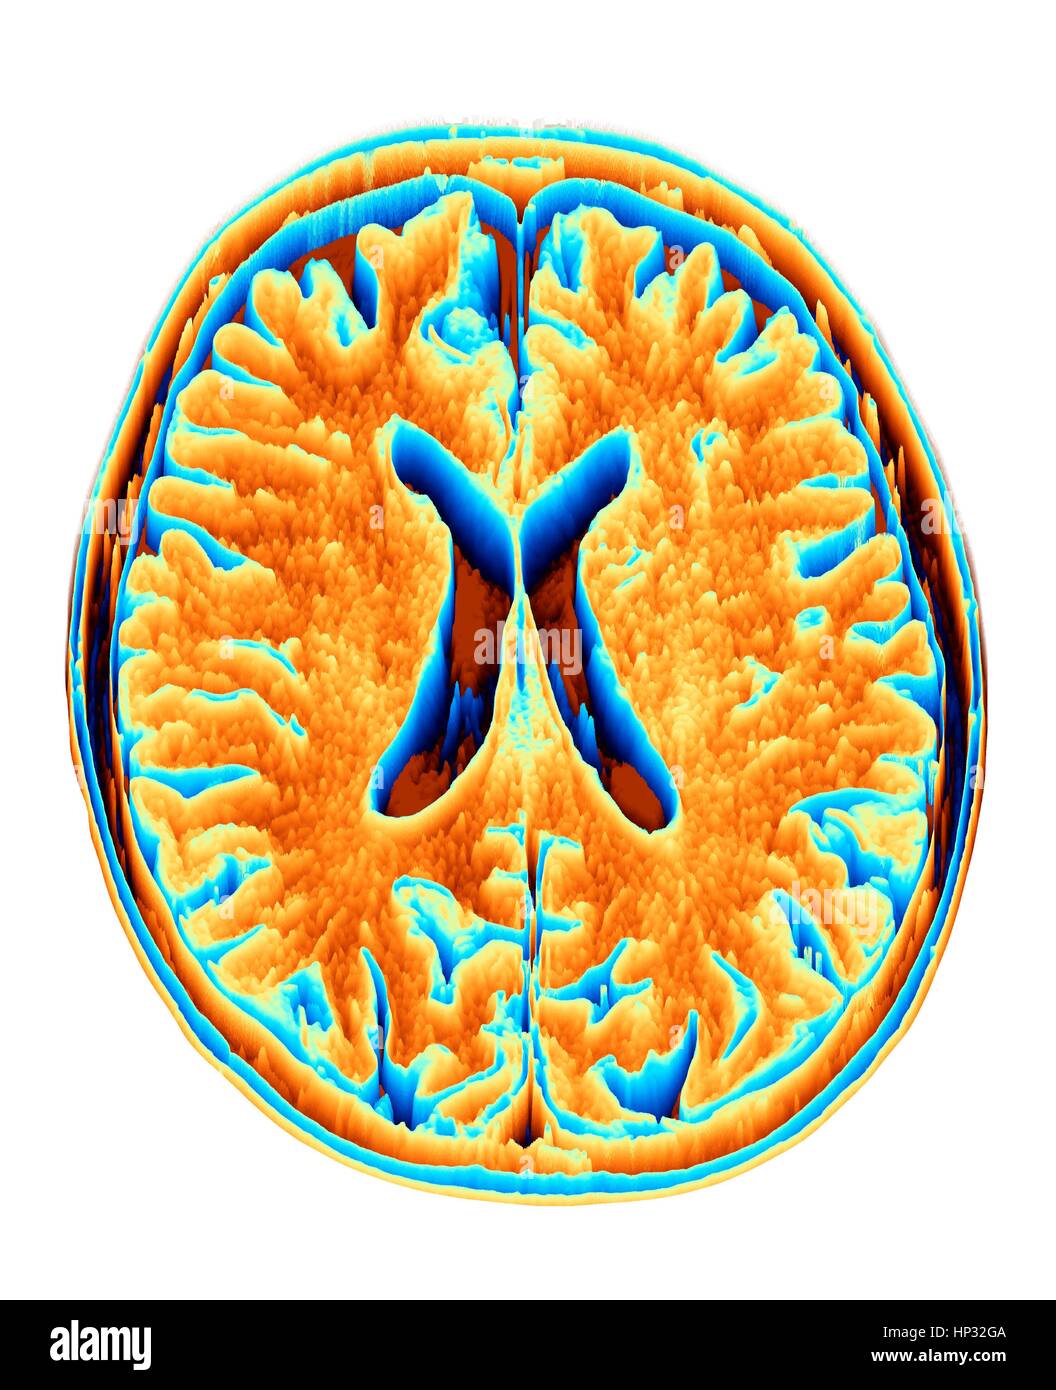 Cervello normale. Colorato di risonanza magnetica (RM) scansione di una sezione assiale attraverso un cervello integro e convertito in una heightmap o campo altezza. Le immagini mostra la corteccia cerebrale e del ventricolo laterale (X-sagomato in medio). Foto Stock